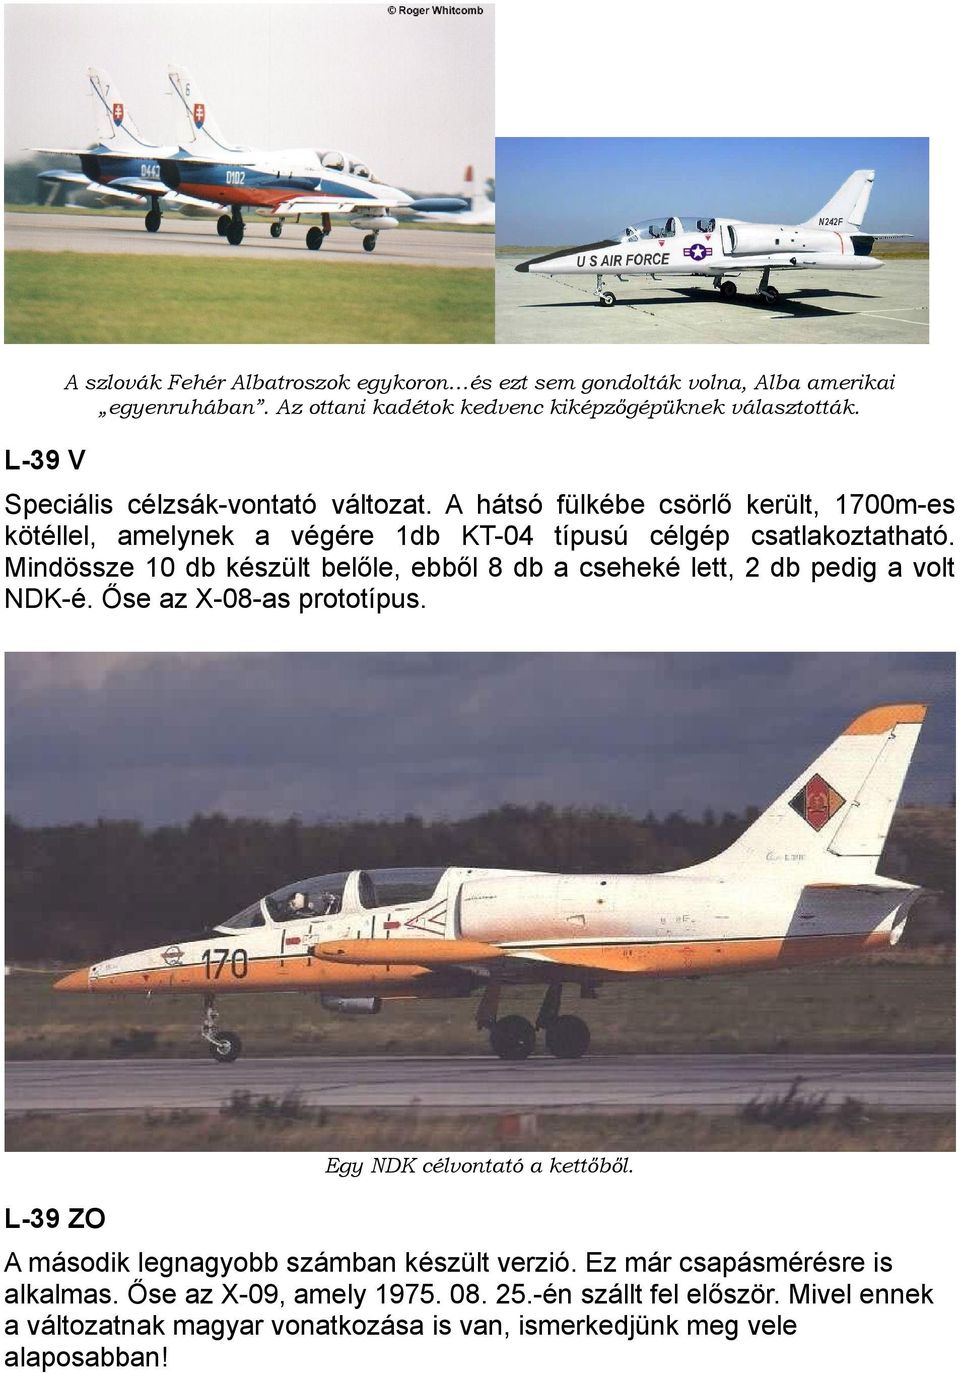 Mindössze 10 db készült belőle, ebből 8 db a cseheké lett, 2 db pedig a volt NDK-é. Őse az X-08-as prototípus. Egy NDK célvontató a kettőből.